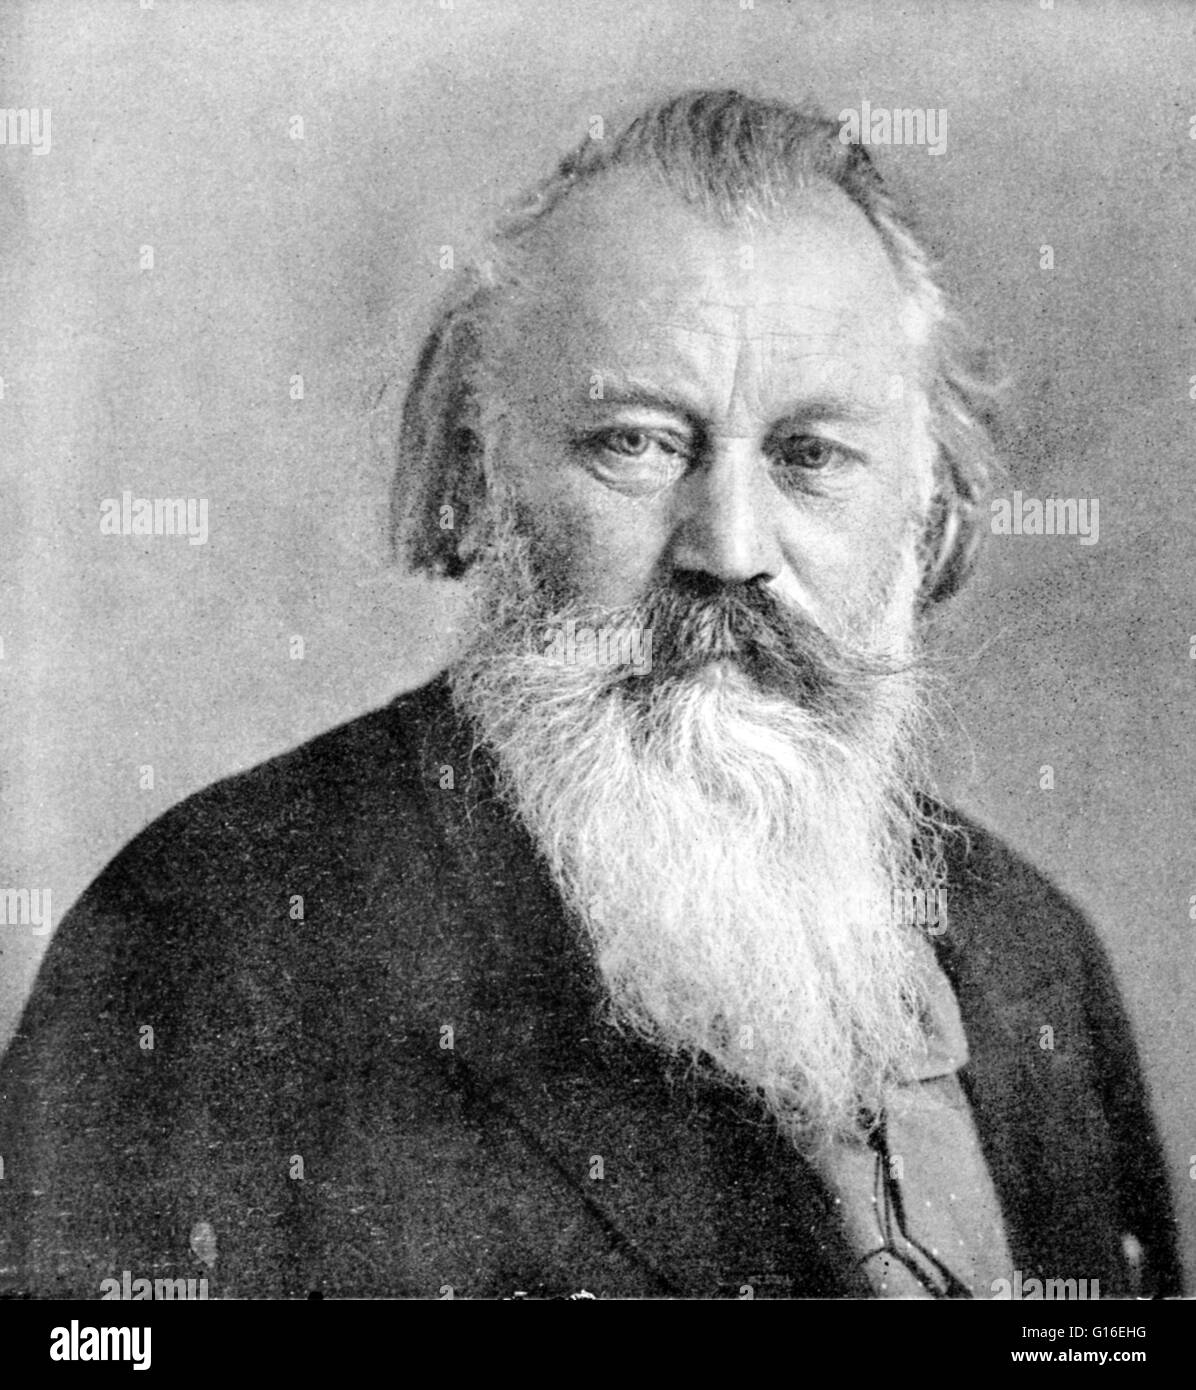 Johannes Brahms (17. Mai 1833 - 3. April 1897) war ein deutscher Komponist und Pianist und einer der führenden Musiker der Romantik. Brahms verbrachte einen Großteil seines Berufslebens in Wien, wo er ein Führer des Musiklebens war. In seinem li Stockfoto